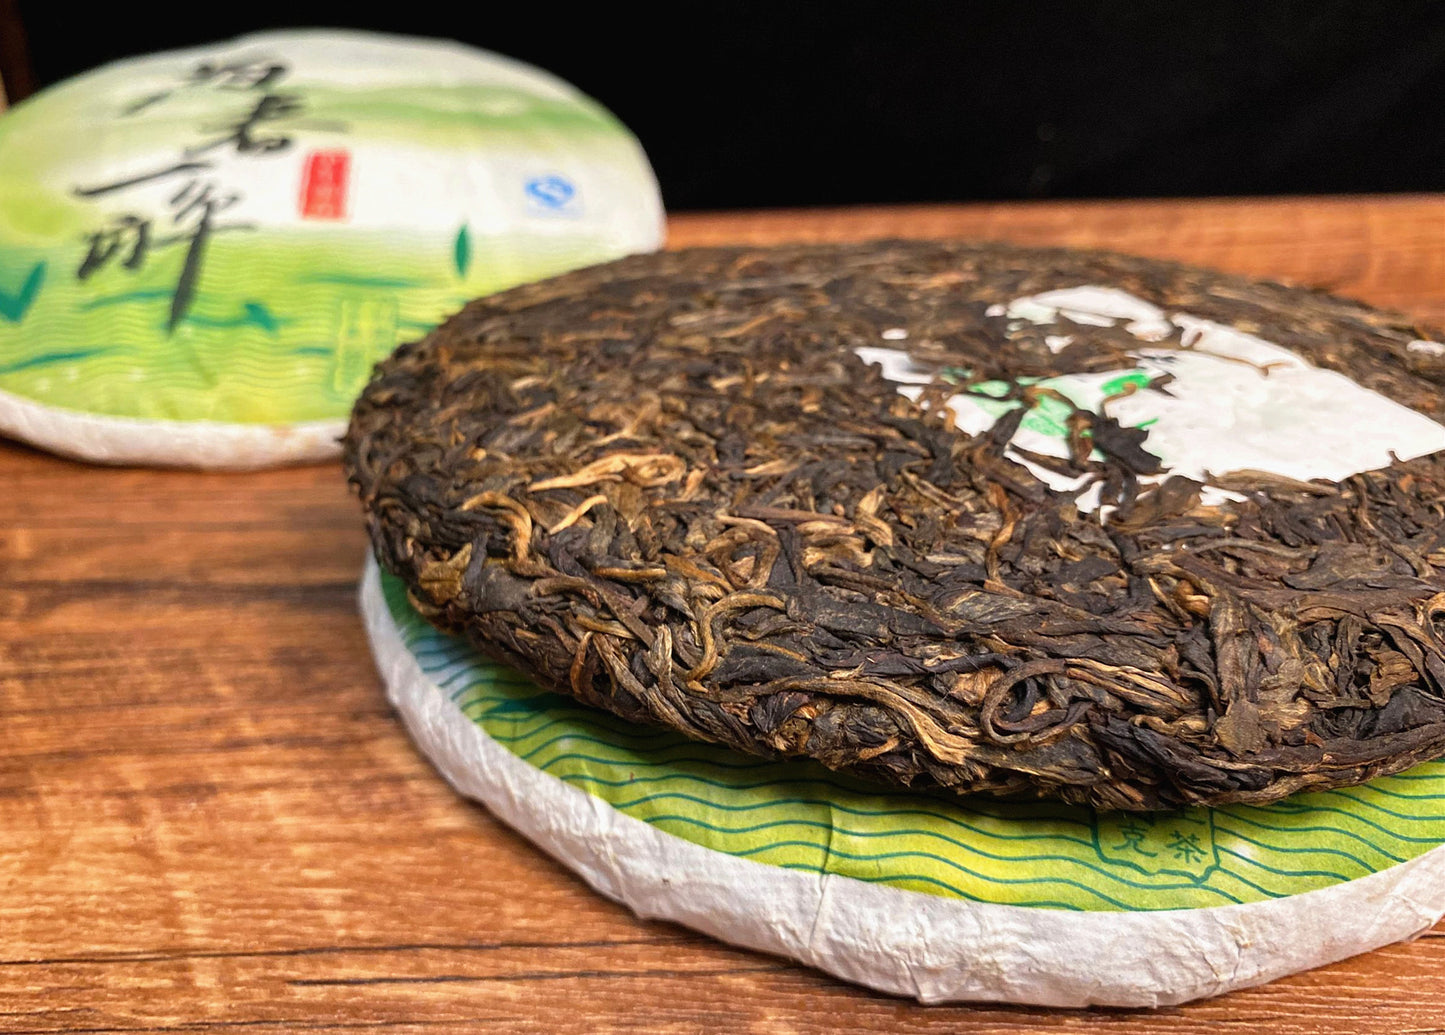 Yunnan Pu’er Tea Pu’er Raw Tea Shengpu Tea Cake 357g Green Tea